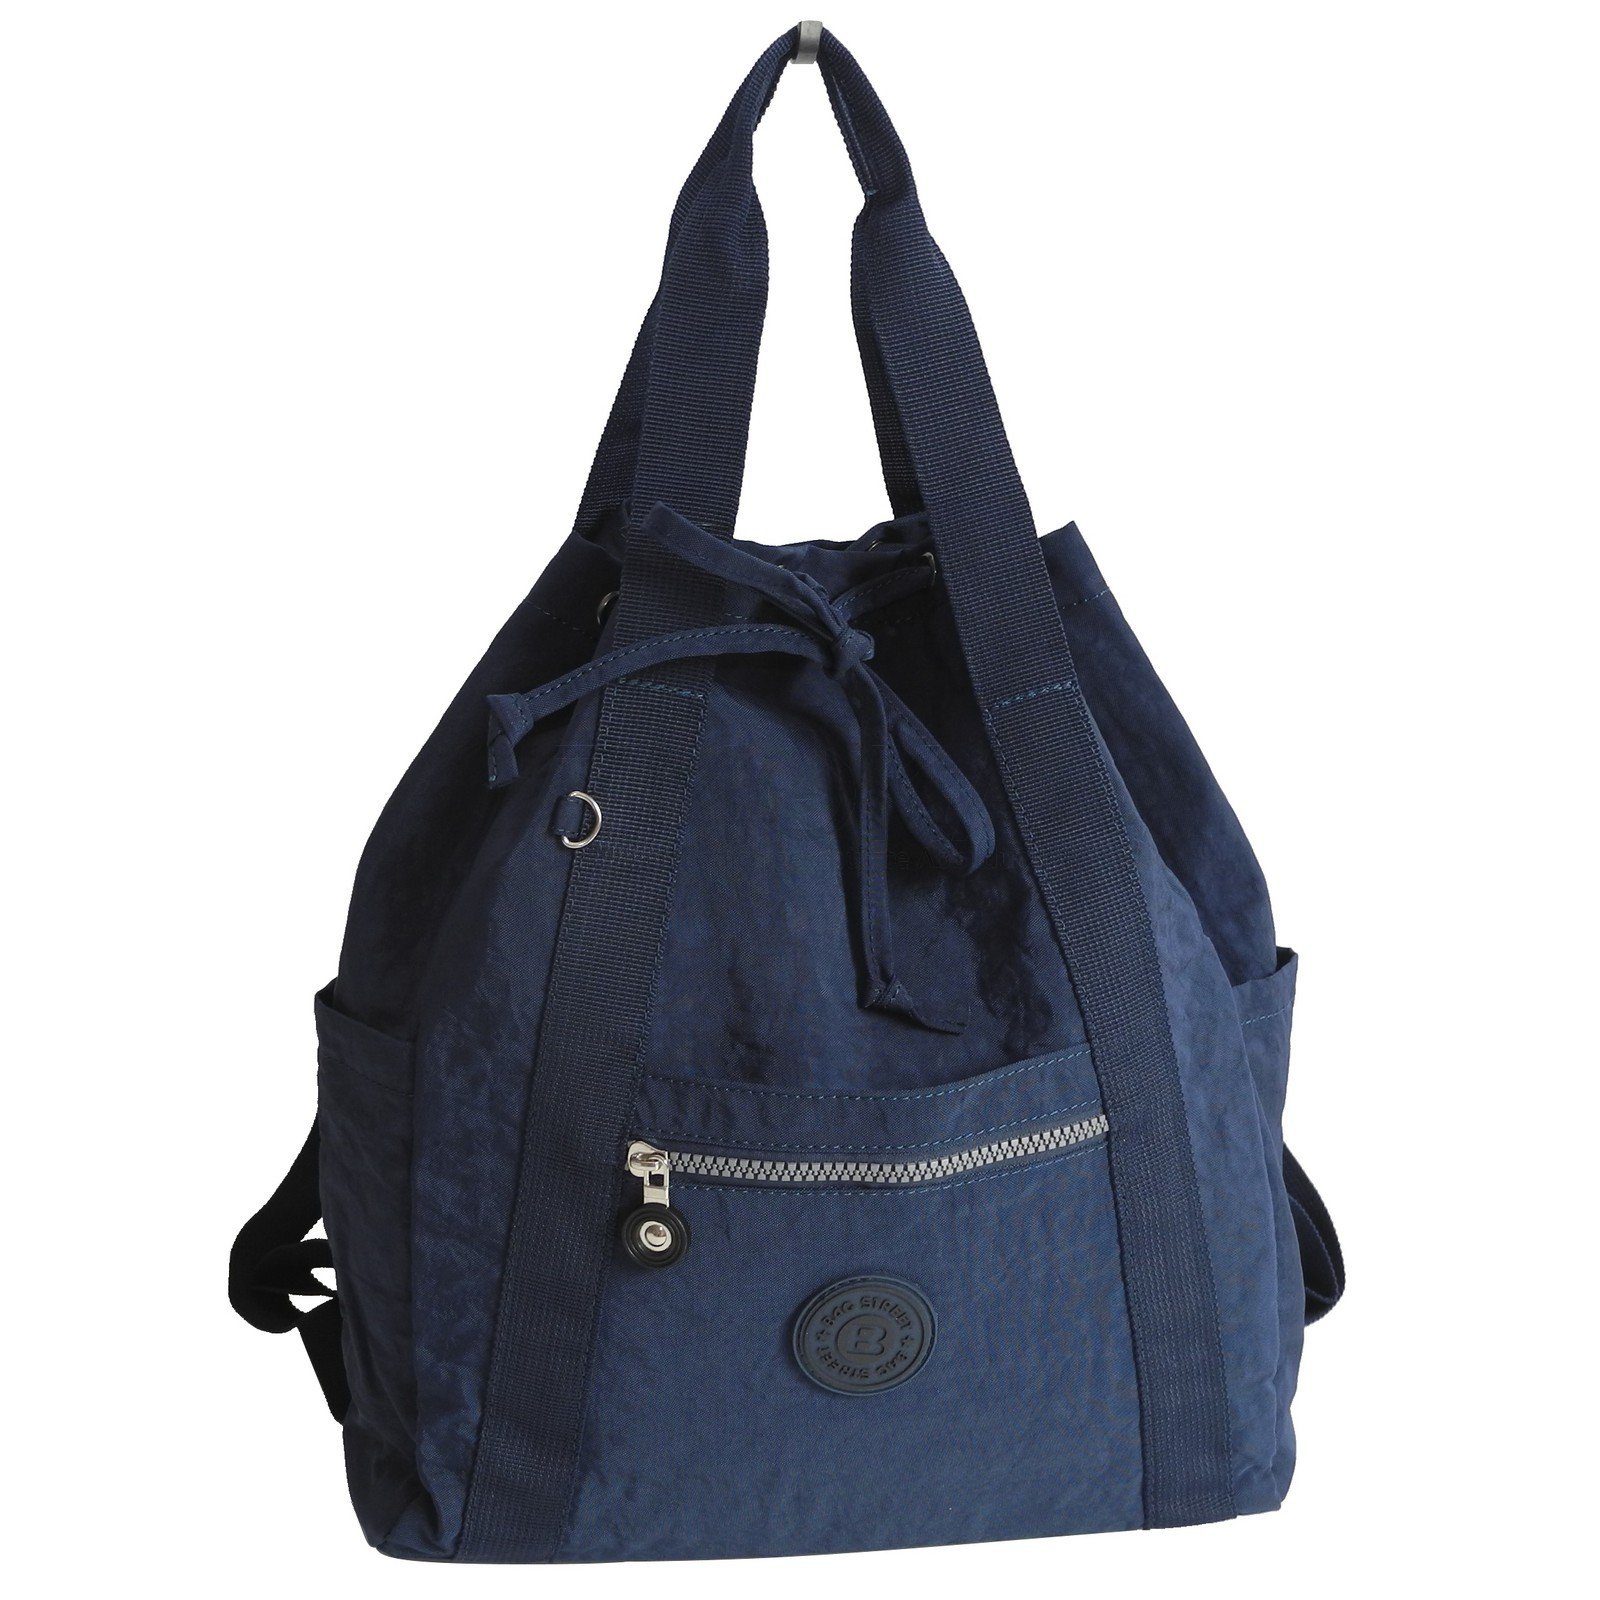 STREET Damen Street leichte Cityrucksack - Rucksackhandtasche Navy BAG Bag